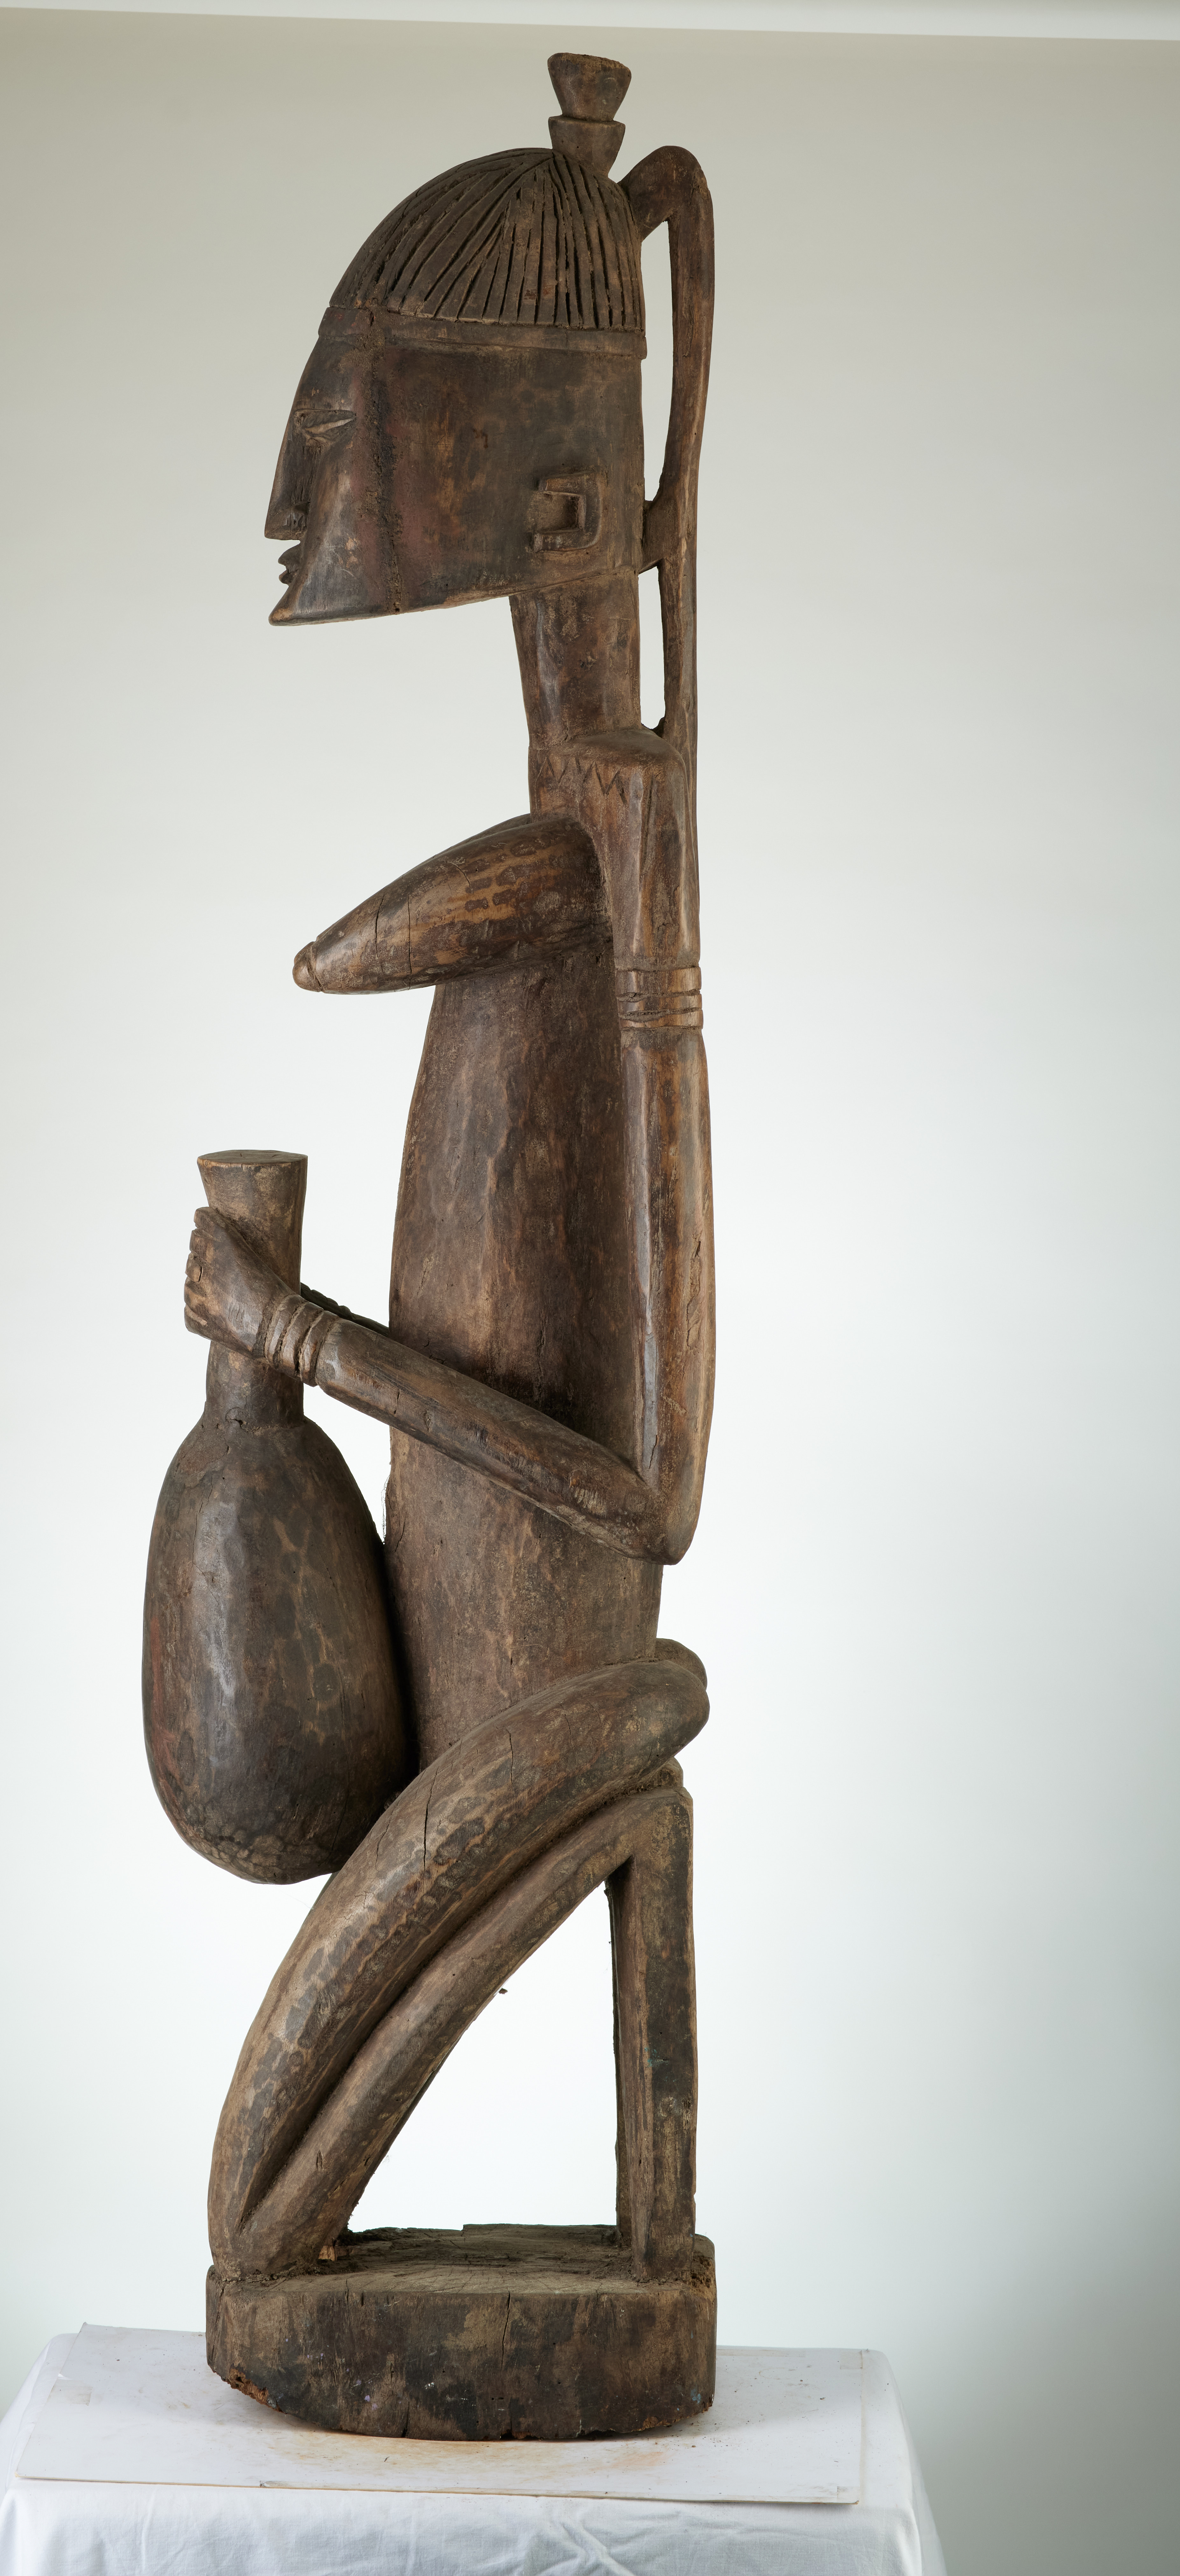 Dogon(femme  agenouillée+cruche), d`afrique : MALI, statuette Dogon(femme  agenouillée+cruche), masque ancien africain Dogon(femme  agenouillée+cruche), art du MALI - Art Africain, collection privées Belgique. Statue africaine de la tribu des Dogon(femme  agenouillée+cruche), provenant du MALI, 1853:statue d